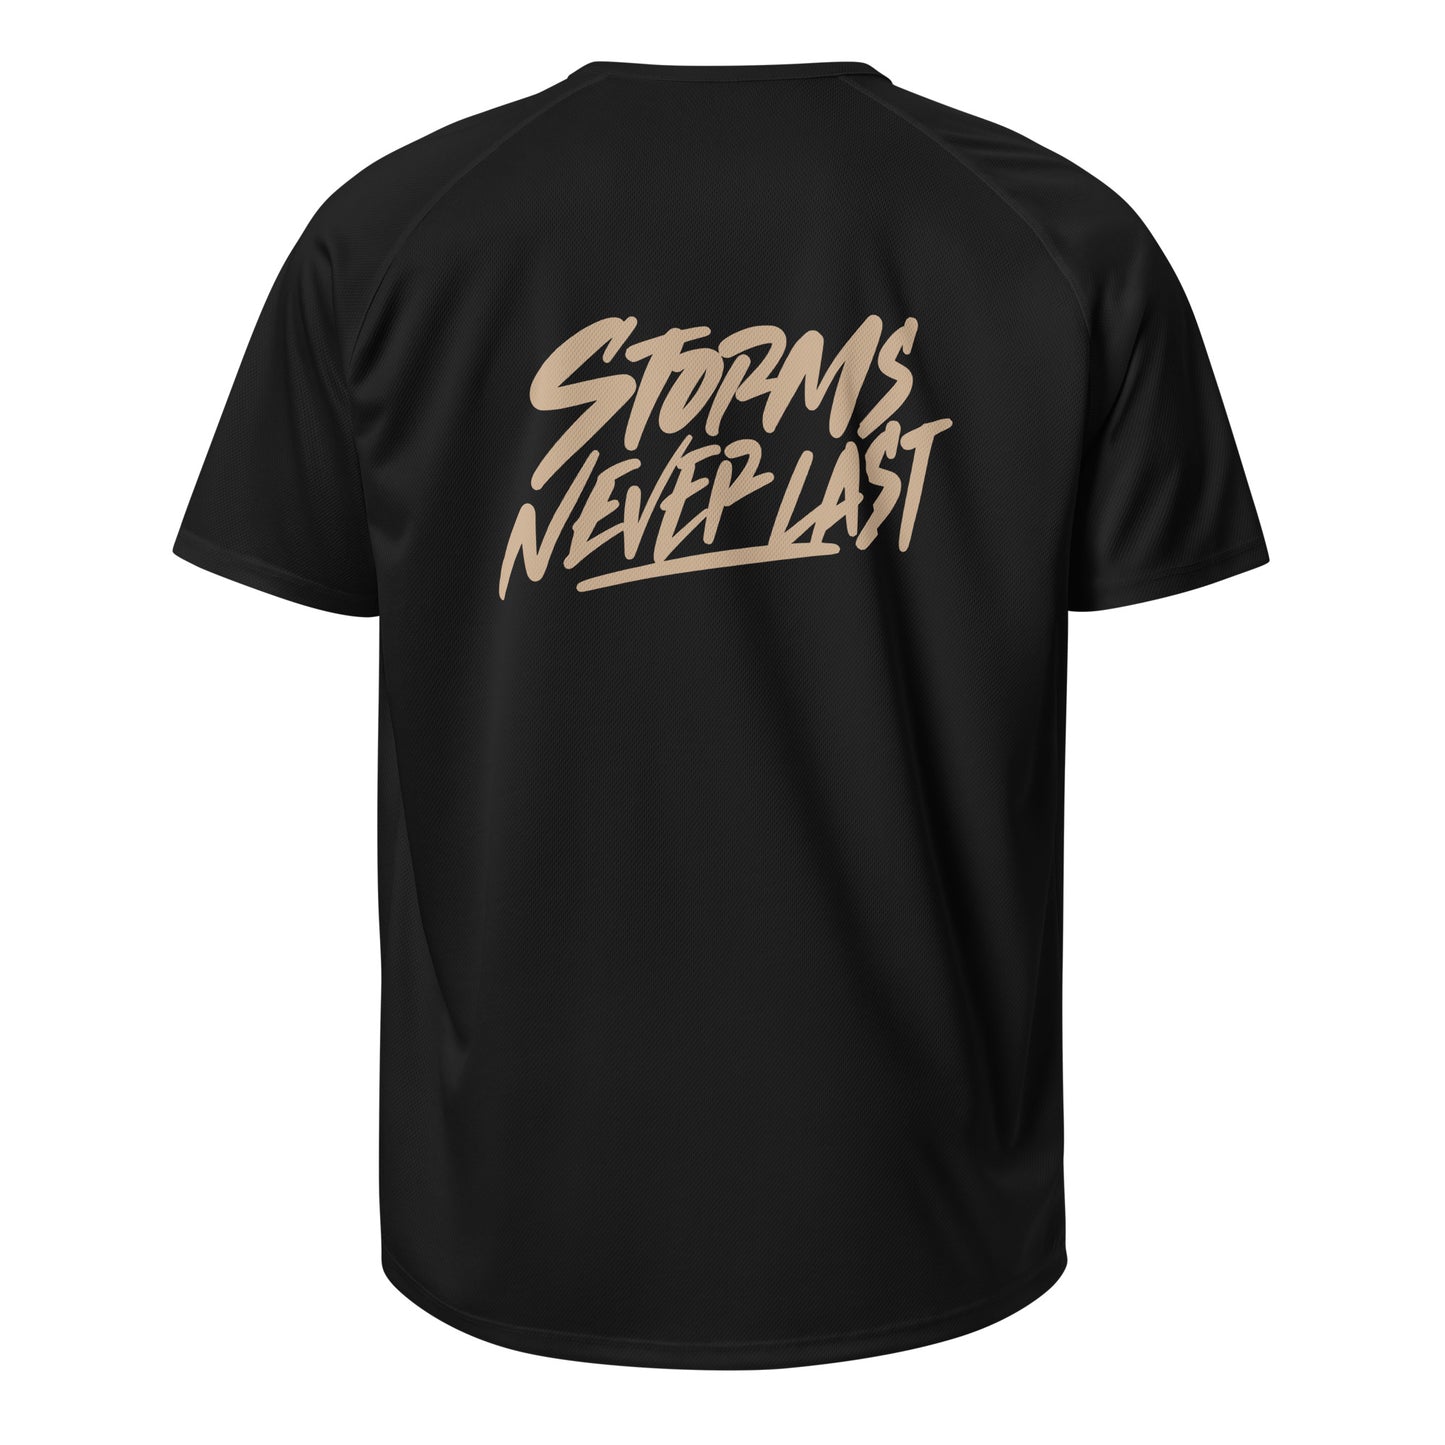 'Storms Never Last' Gold Handwritten T-Shirt